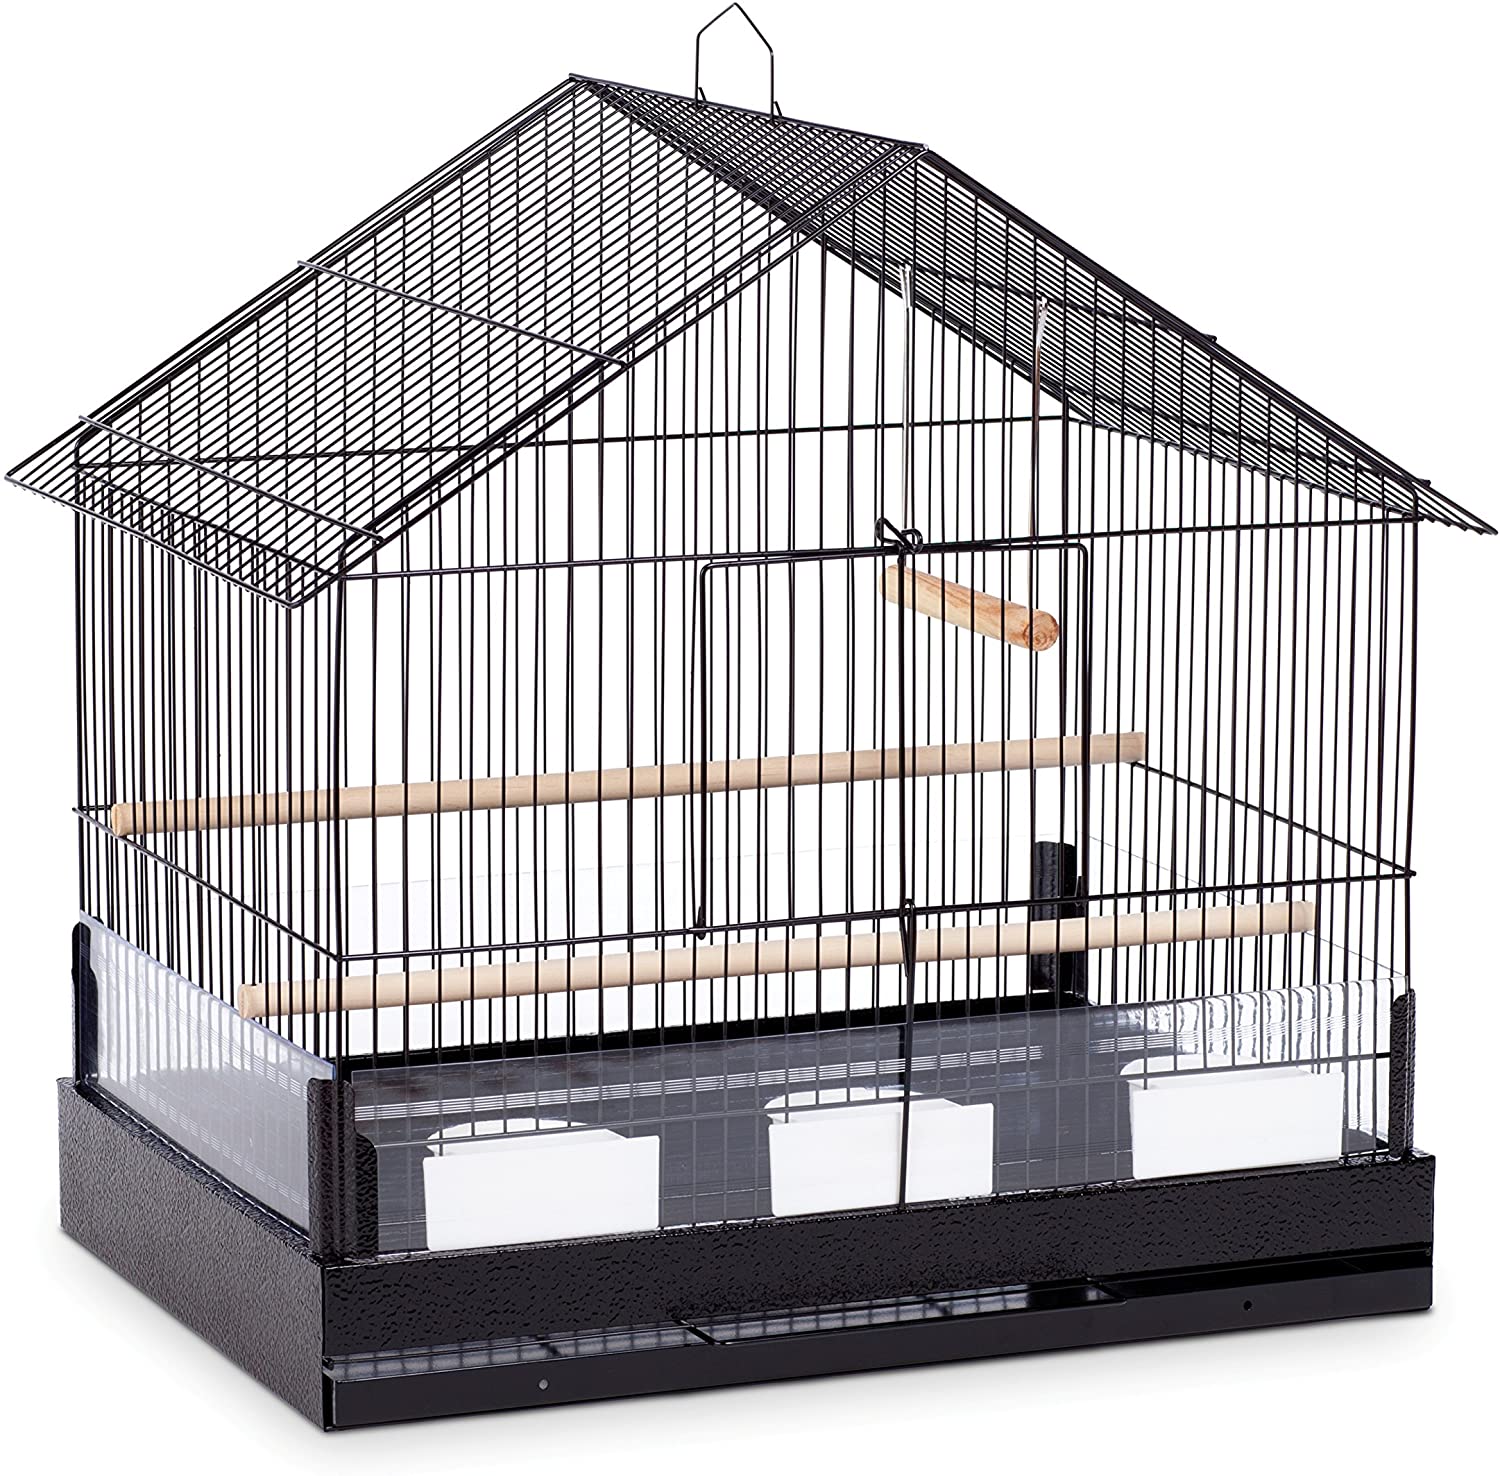 Prevue Hendryx The Lincoln Bird Cage - Black - 22" x 15" x 23"  